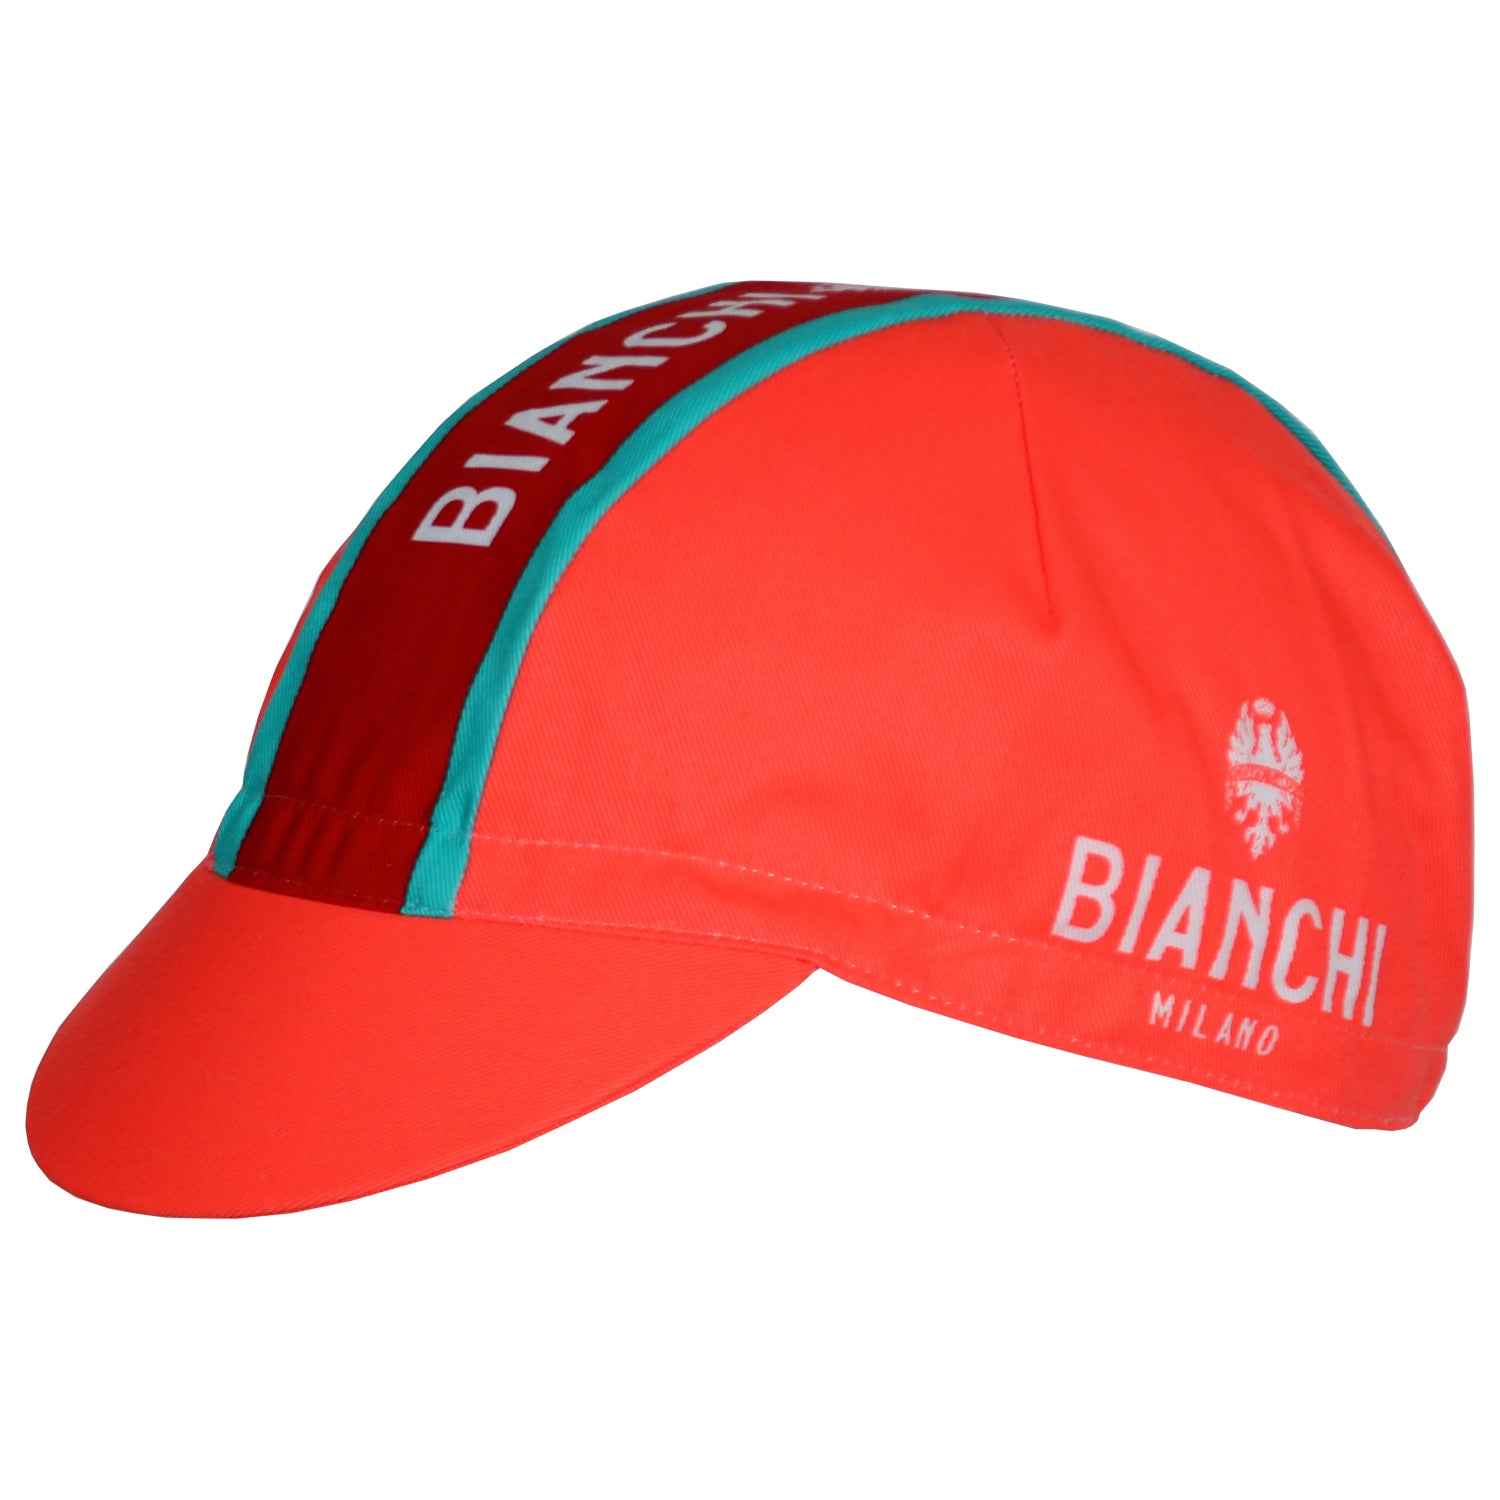 Bianchi Cycling Cap - Neon Orange